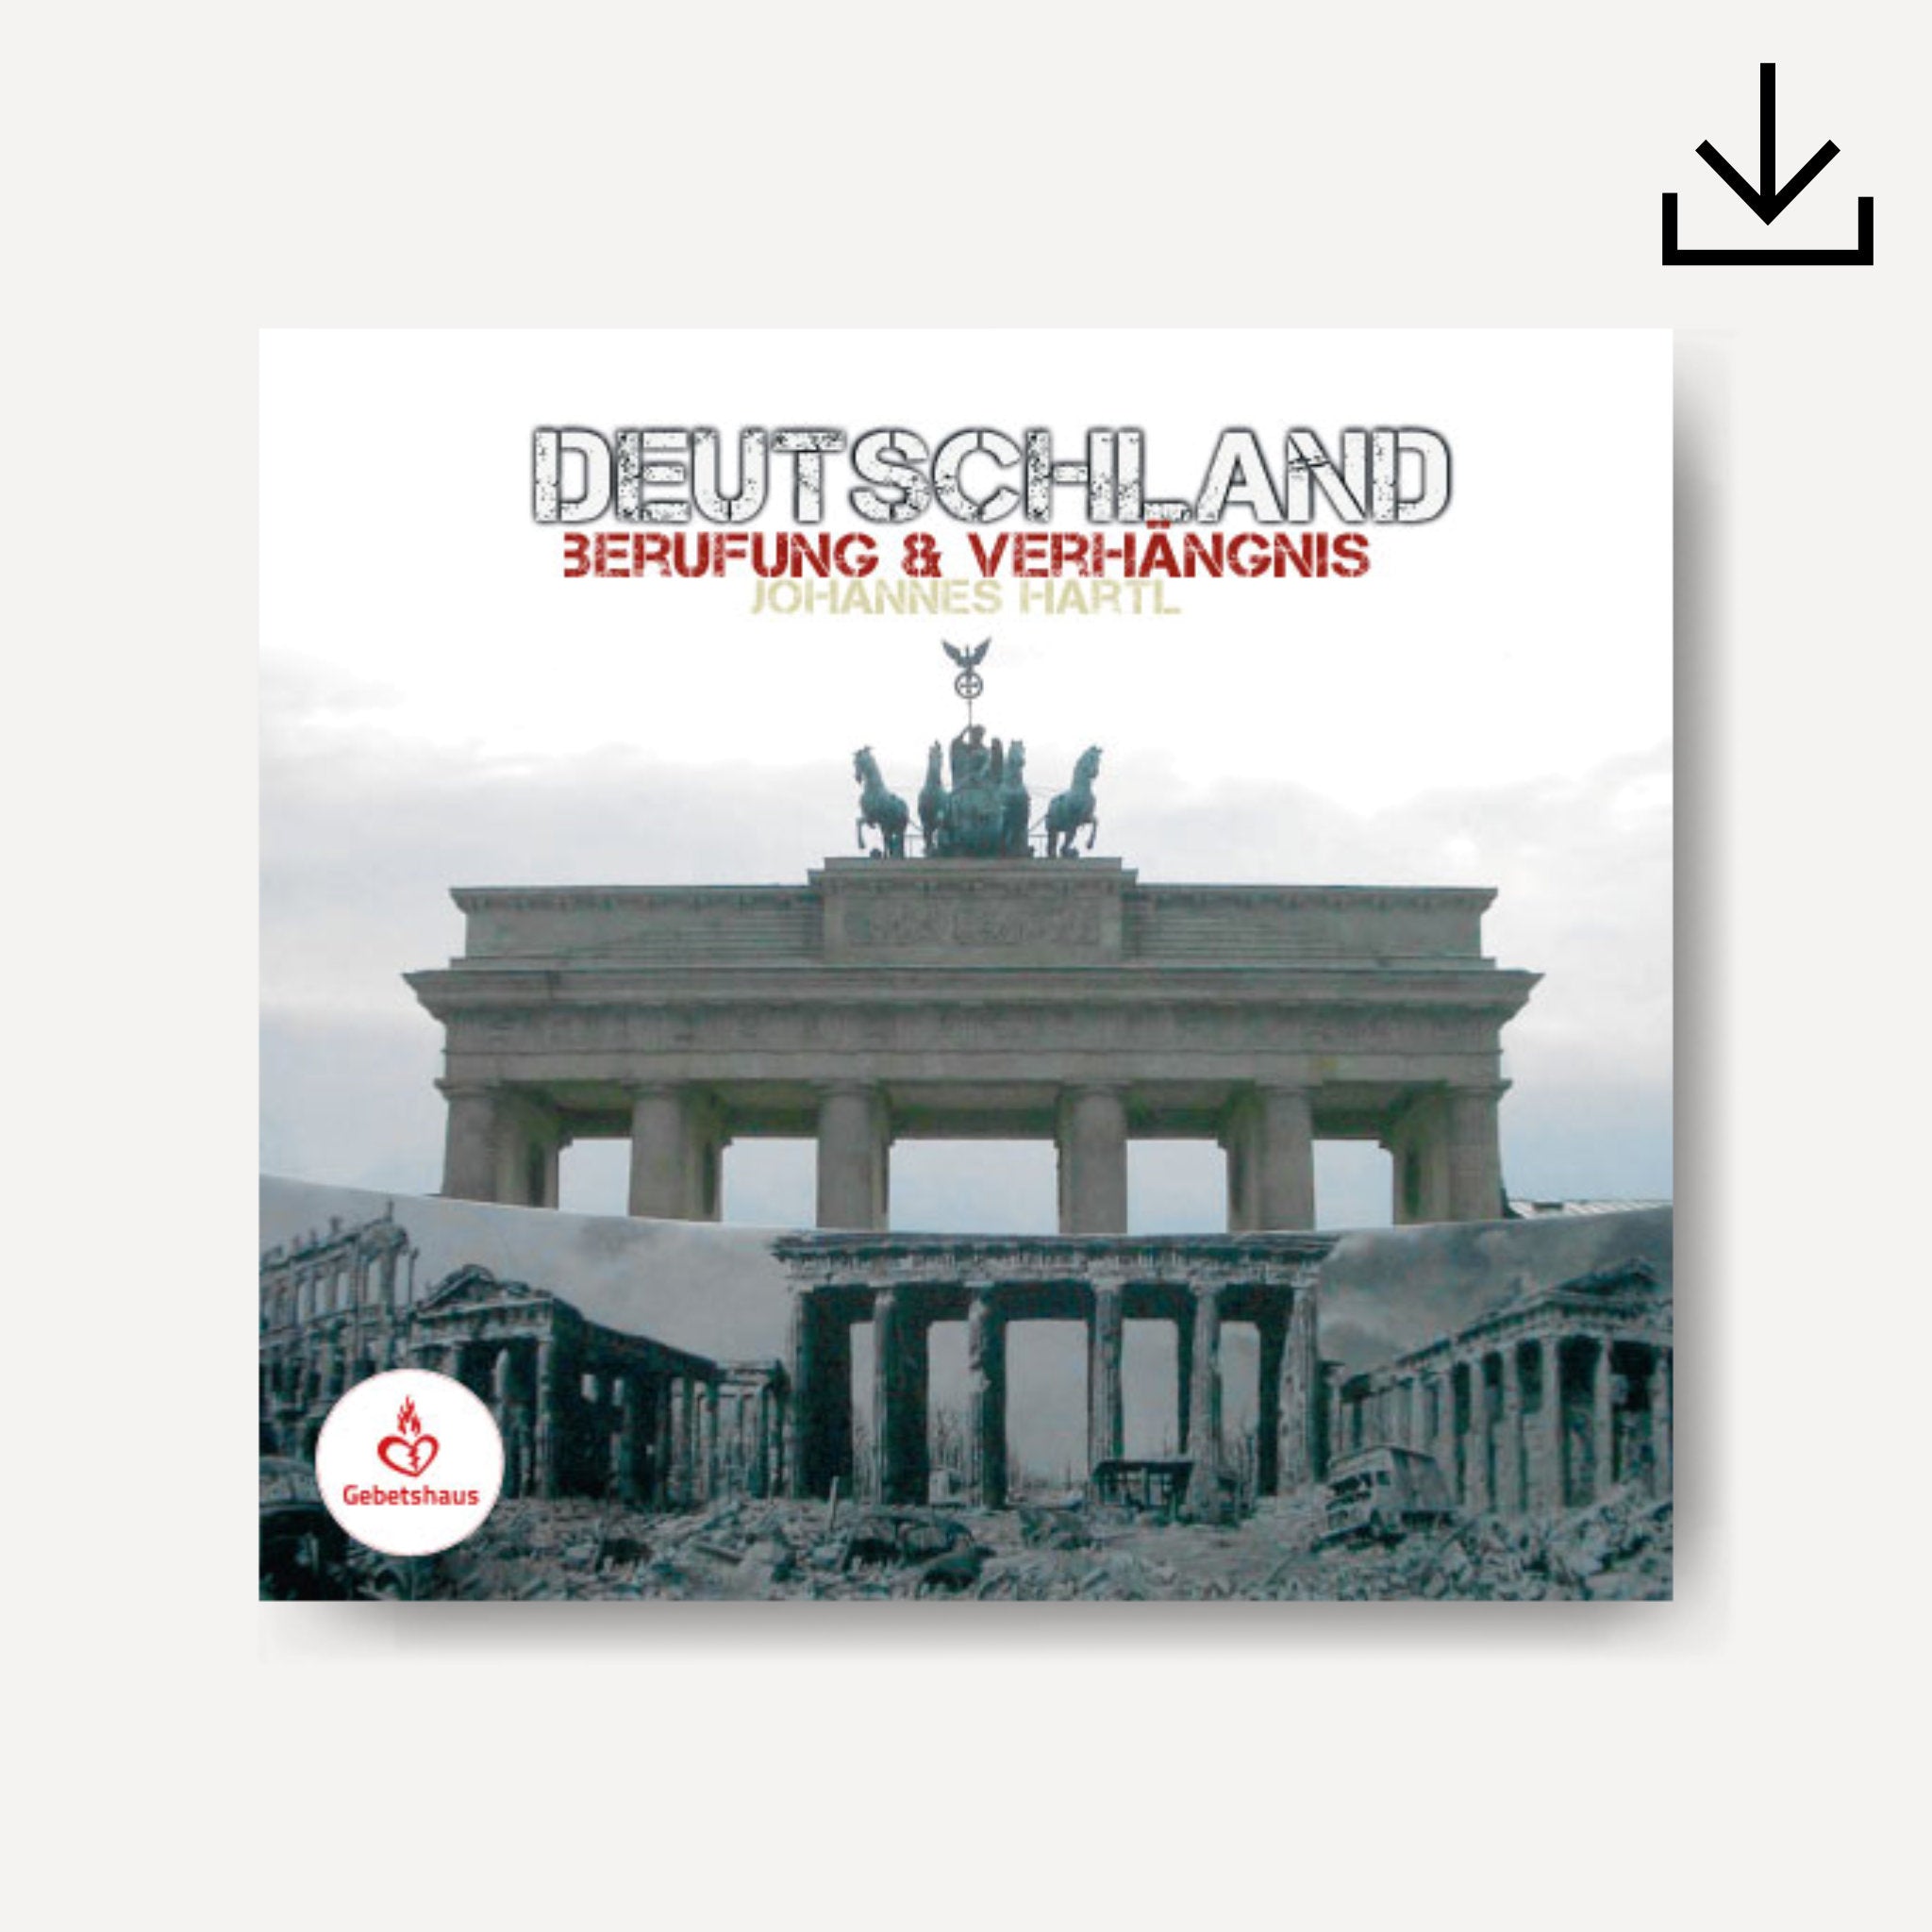 deutschland-cover-download.jpg